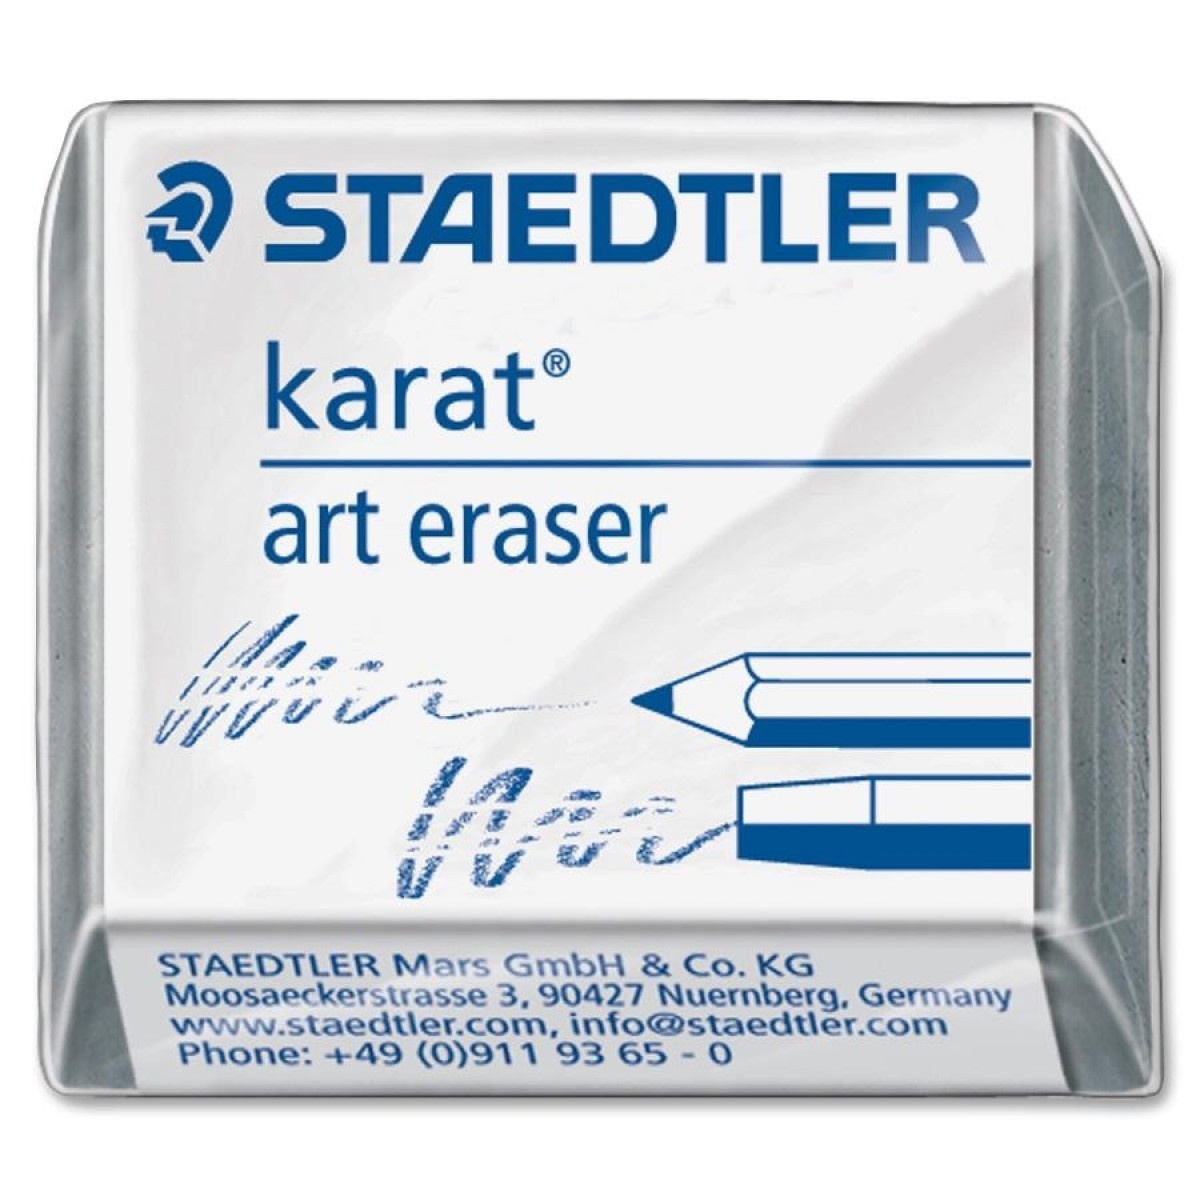 Staedtler Karat Art Eraser